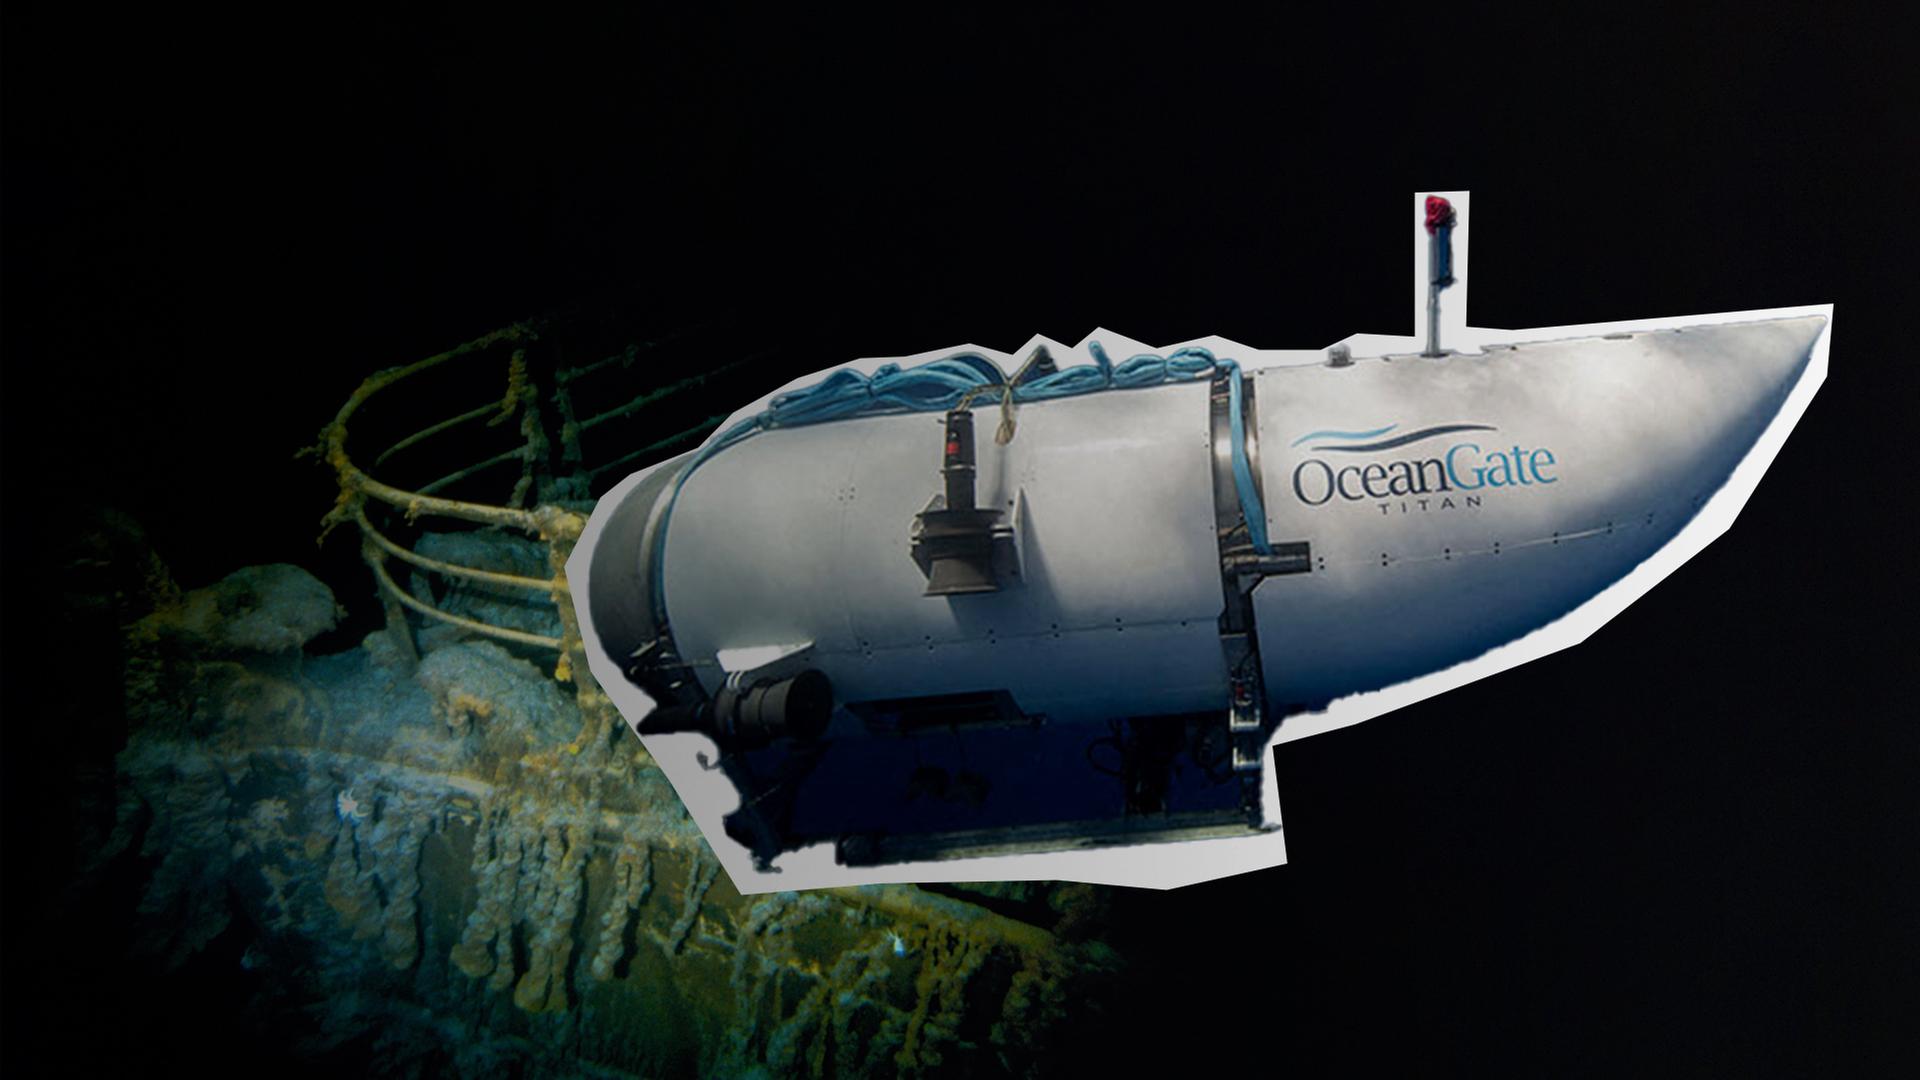 Zu sehen ist eine Montage mit einem Tauchboot des Unternehmens "OceanGate" und Teilen des Wracks der "Titanic".